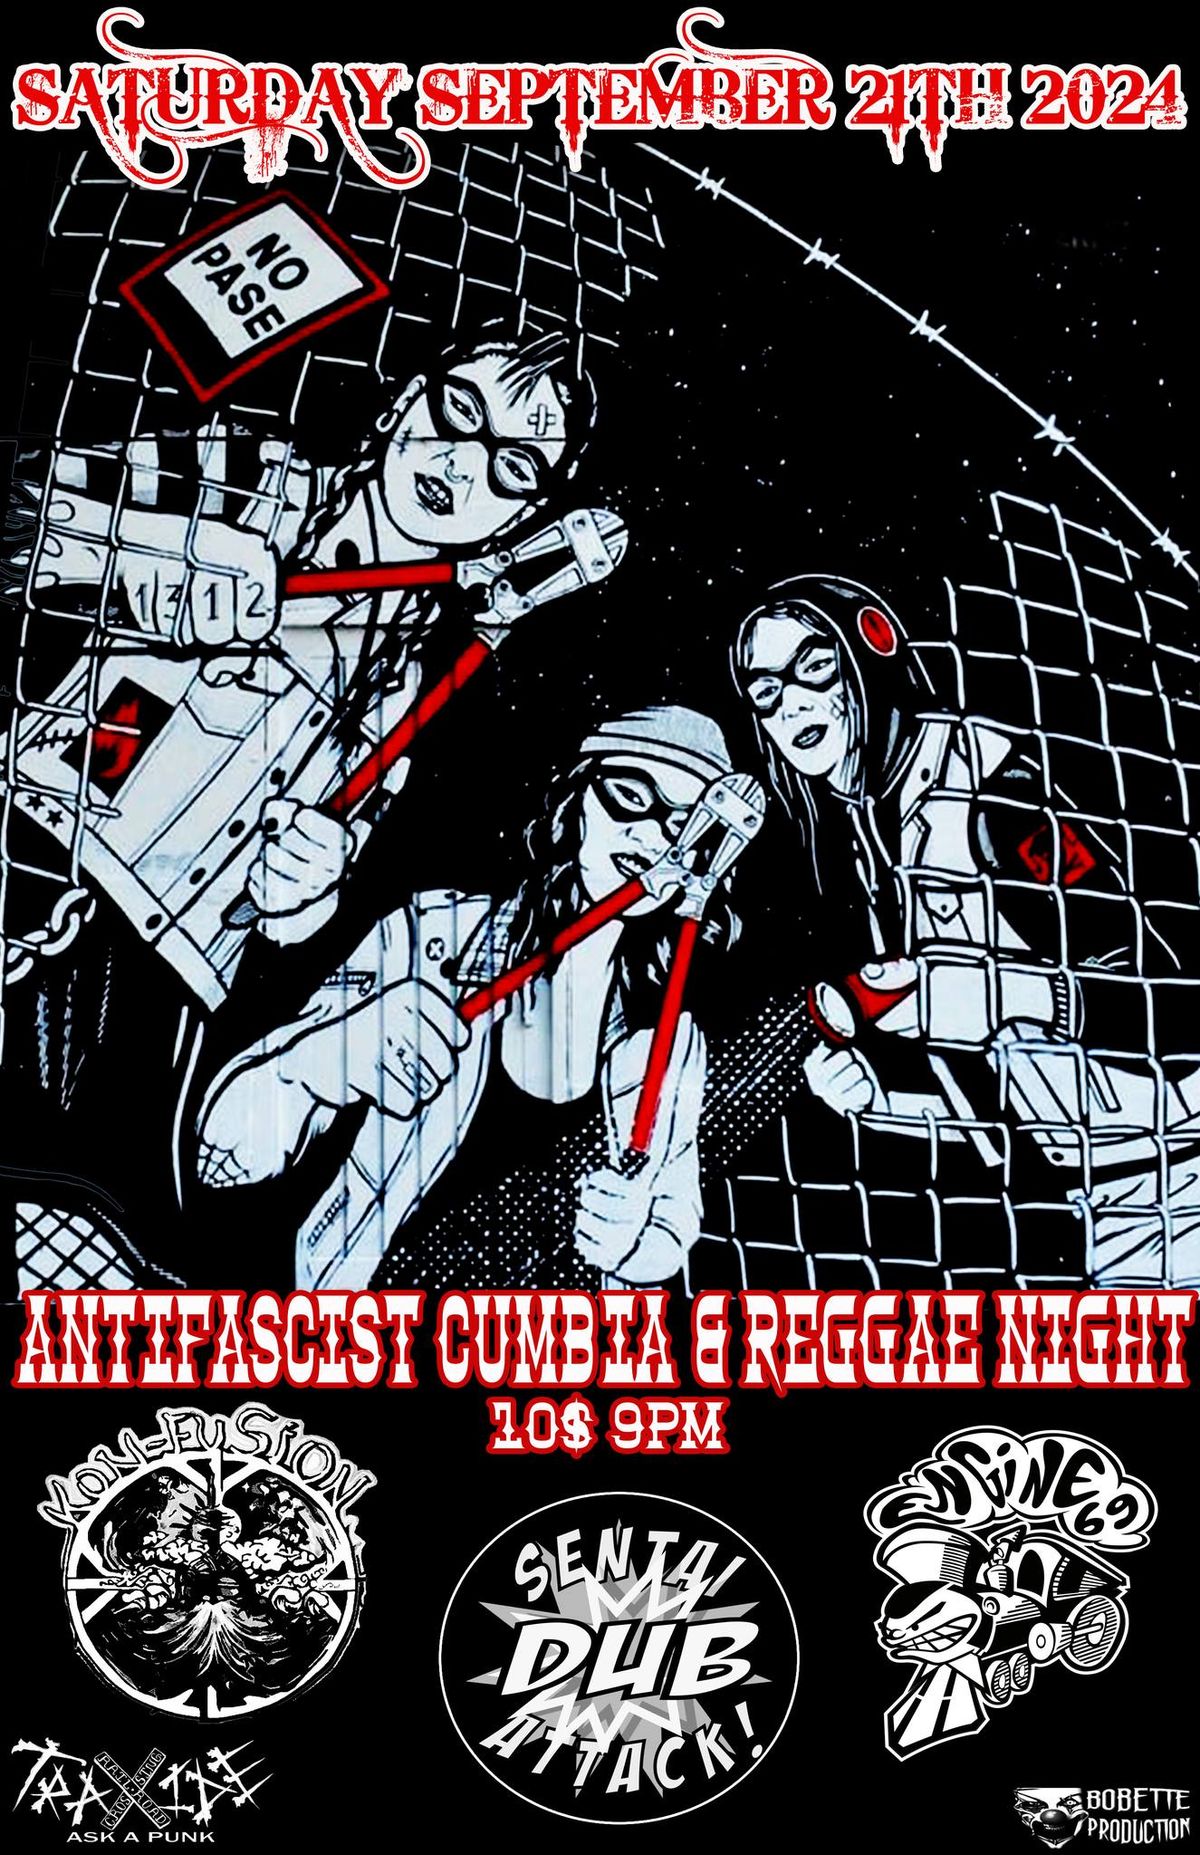 Antifascist cumbia & reggae night with Konfusion \/ Sentai Dub Attack \/ Engine 69